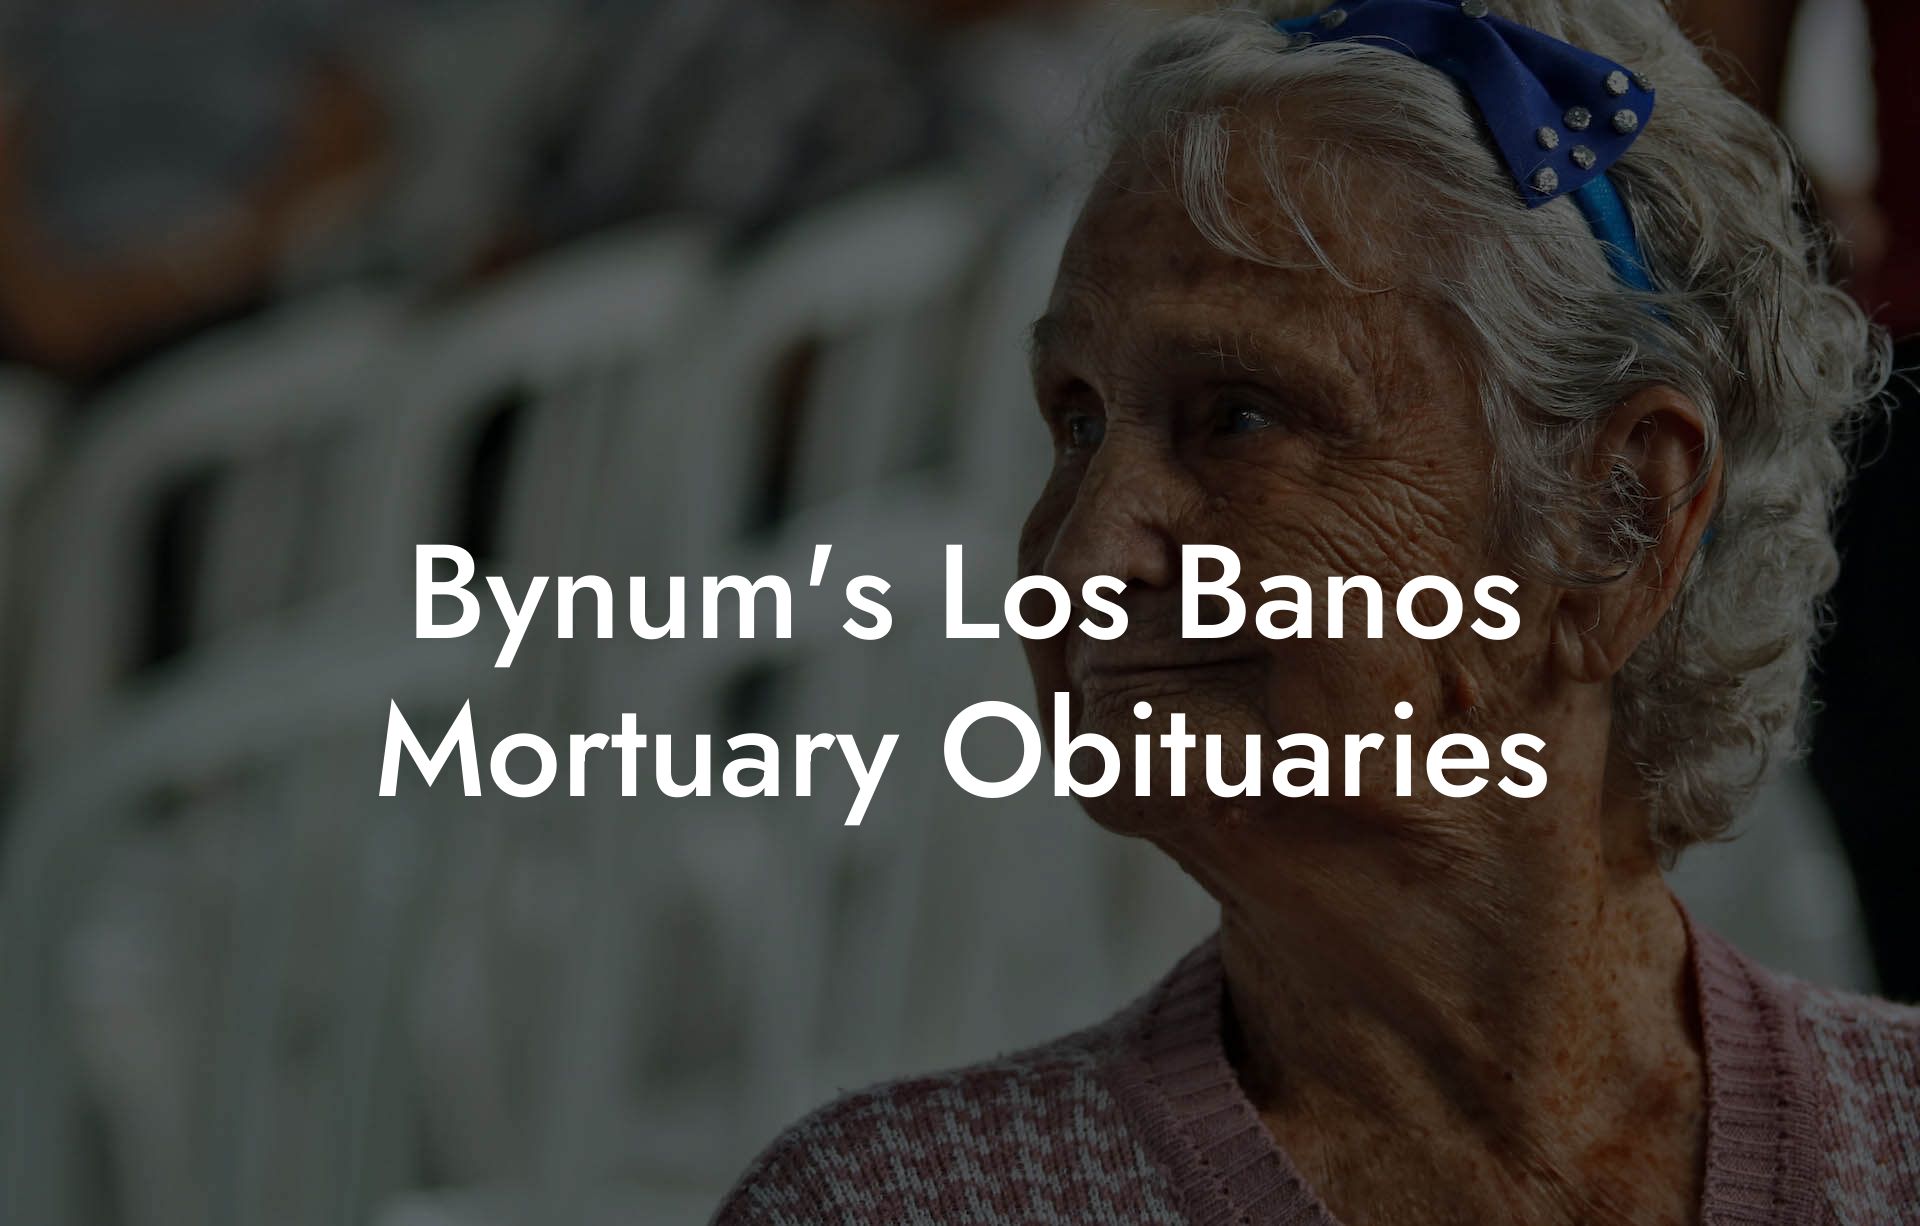 Bynum's Los Banos Mortuary Obituaries